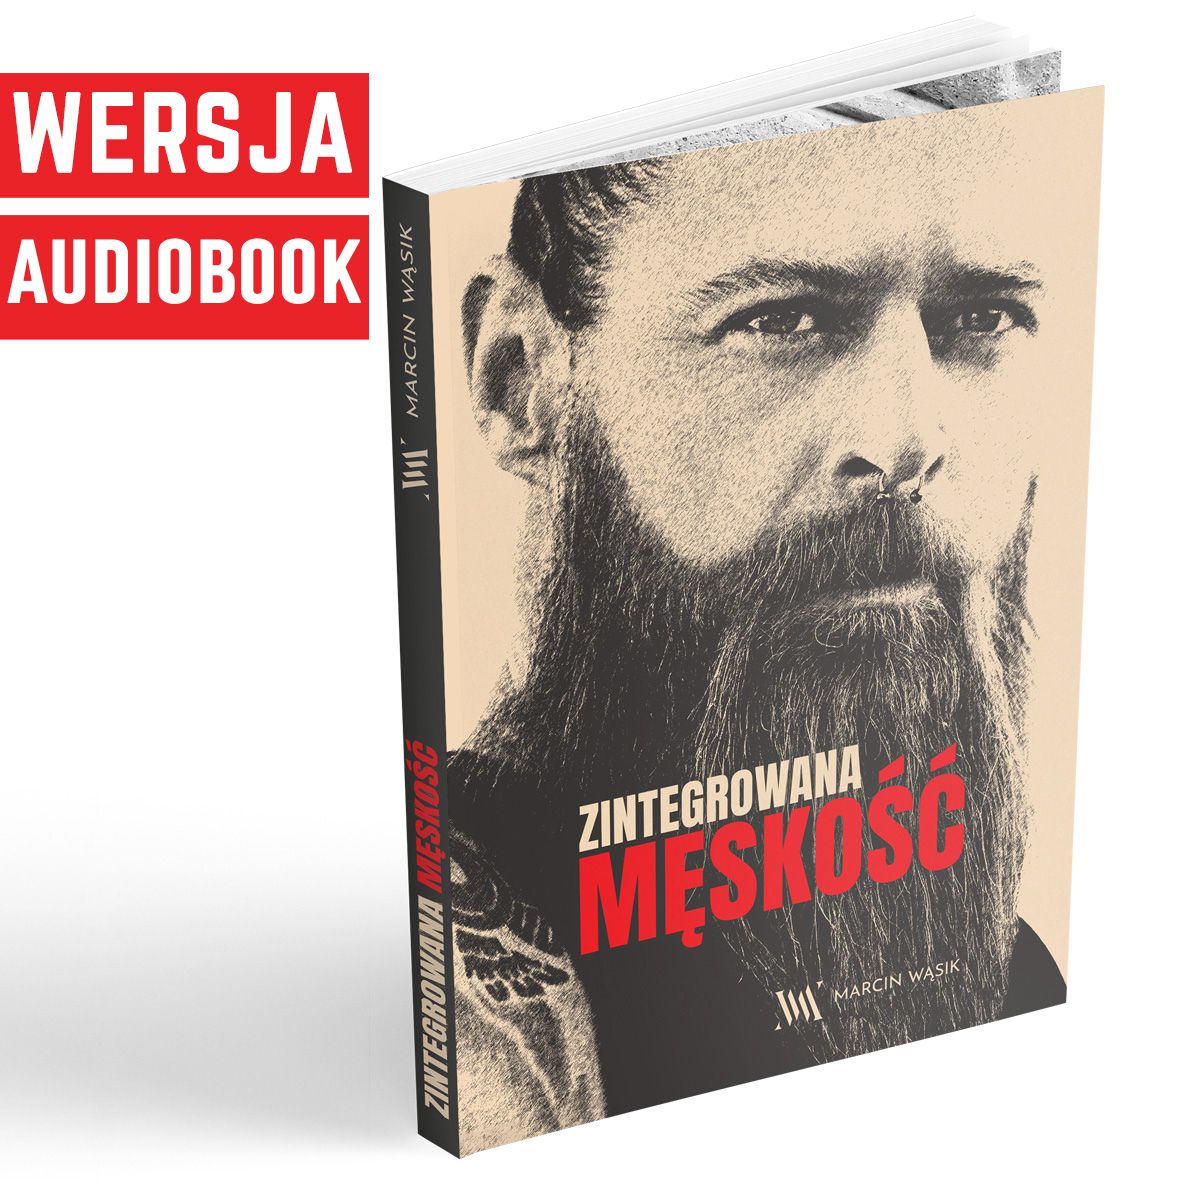 Zintegrowana męskość audiobook